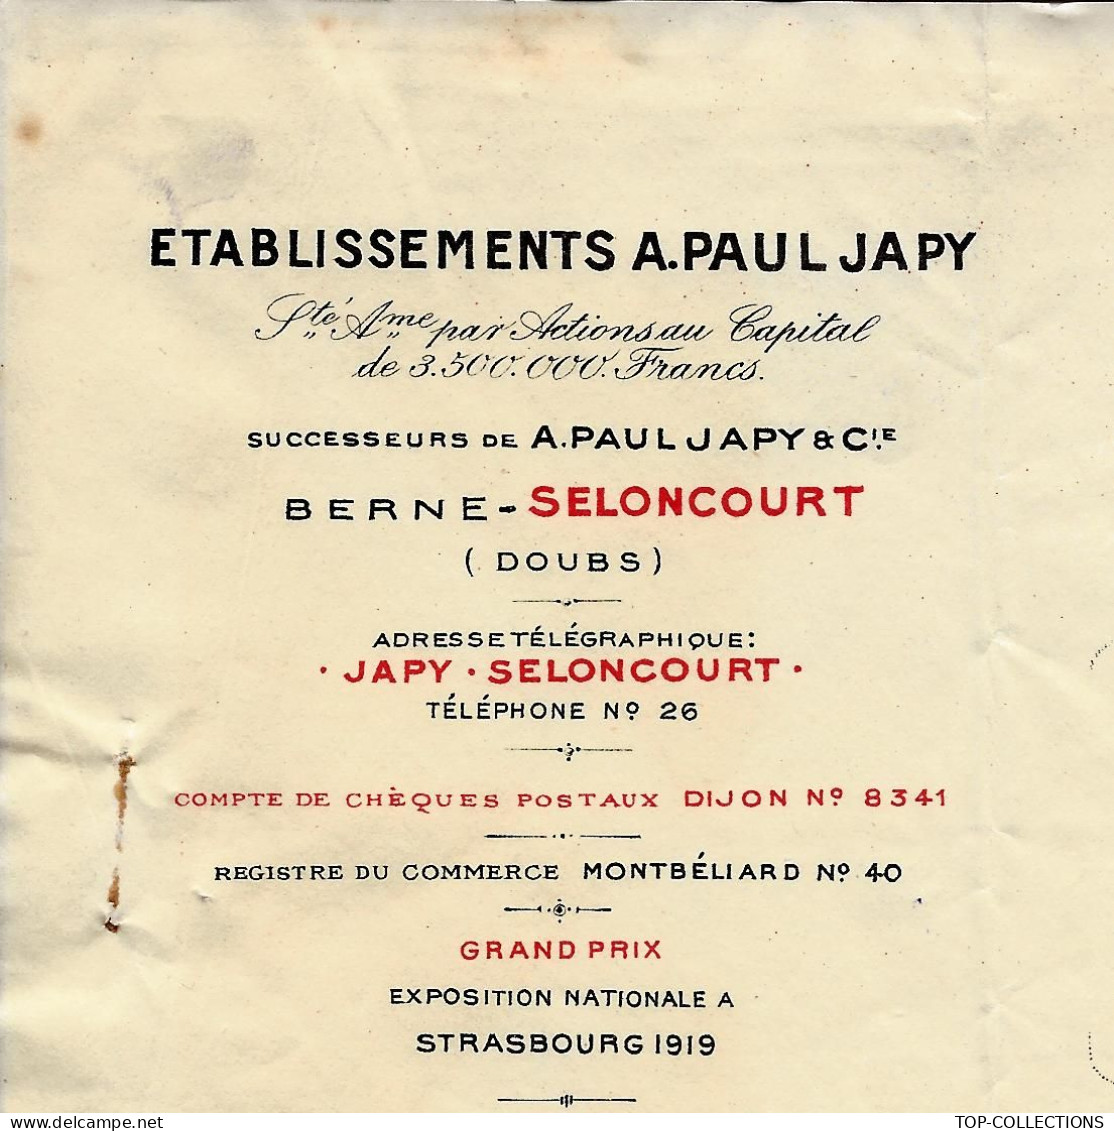 1924  ENTETE ETABLISSEMENTS A.PAUL JAPY Berne Seloncourt Doubs Pour Froidefond Quincaillerie Libourne Gironde - 1900 – 1949